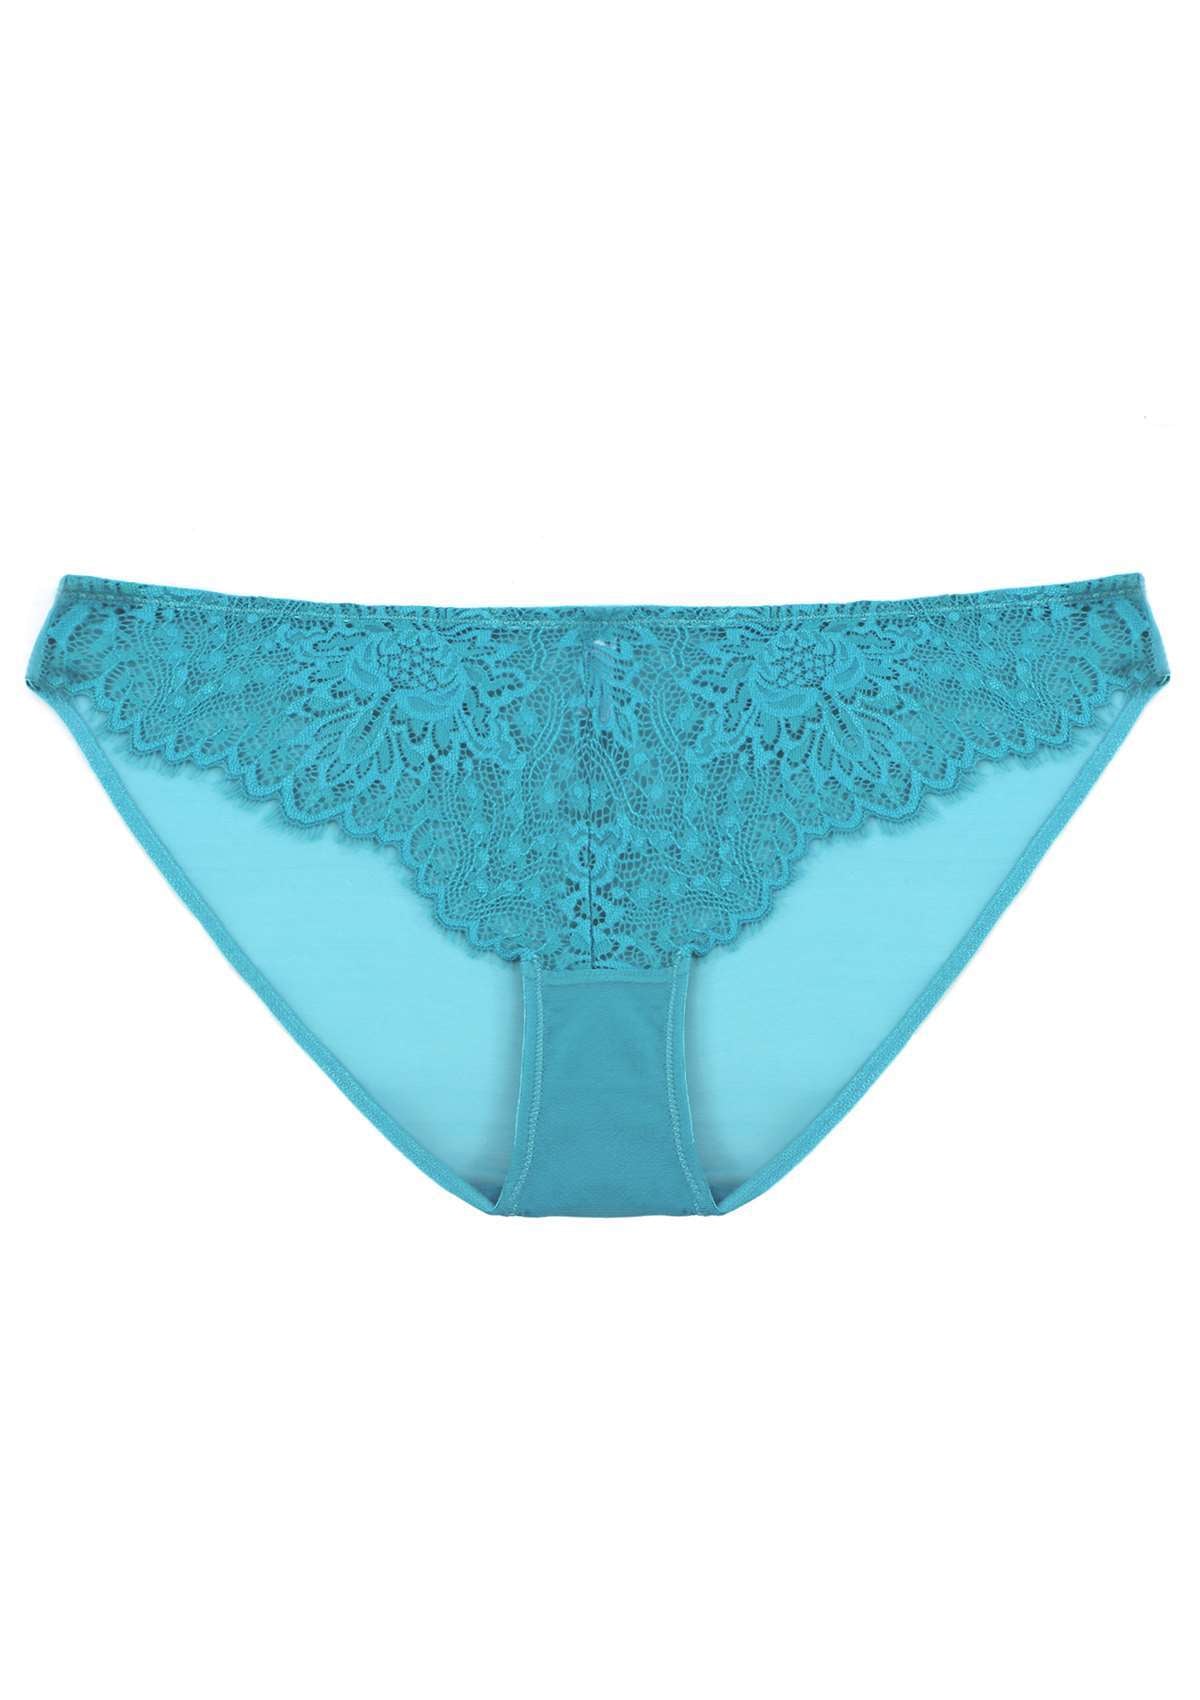 HSIA Sunflower Exquisite Lace Bikini Underwear - XXXL / Pink